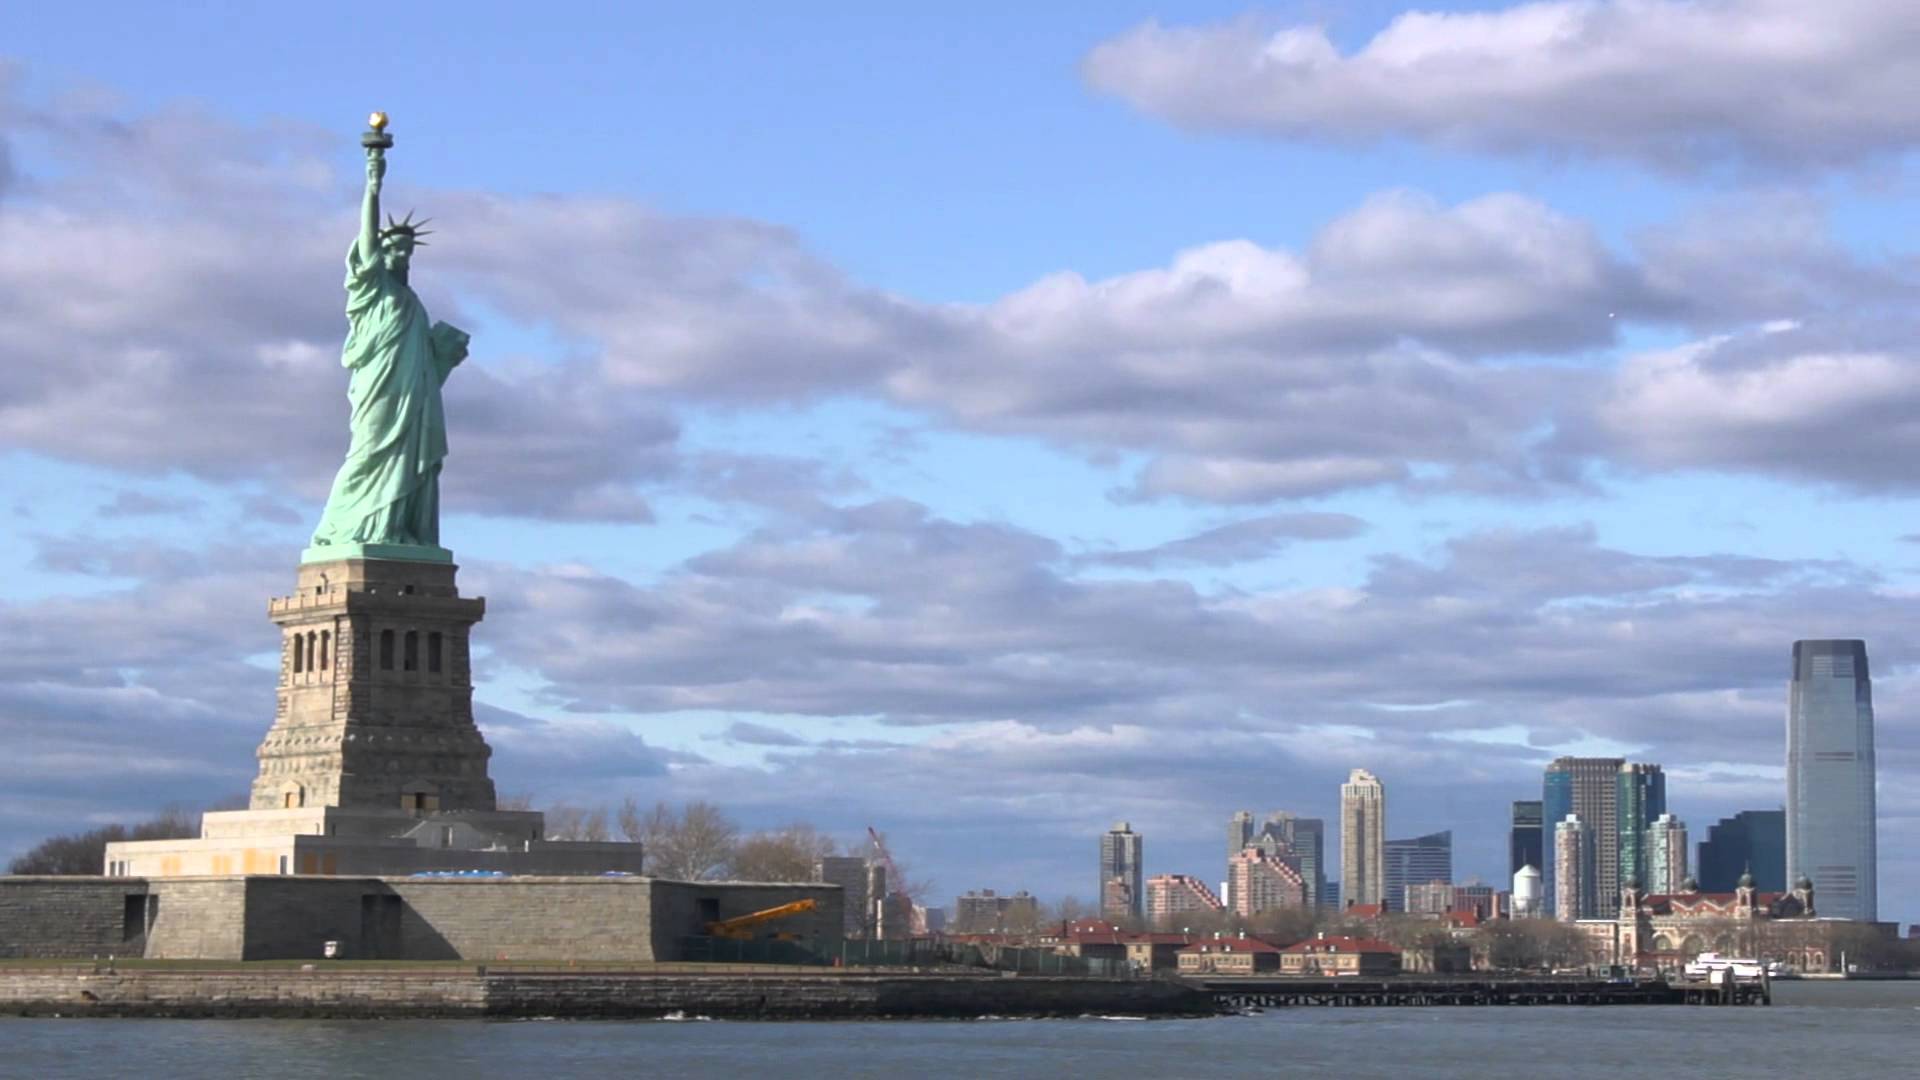 إغلاق مزار تمثال الحرية فى نيويورك أمام السائحين والسبب غير معروف